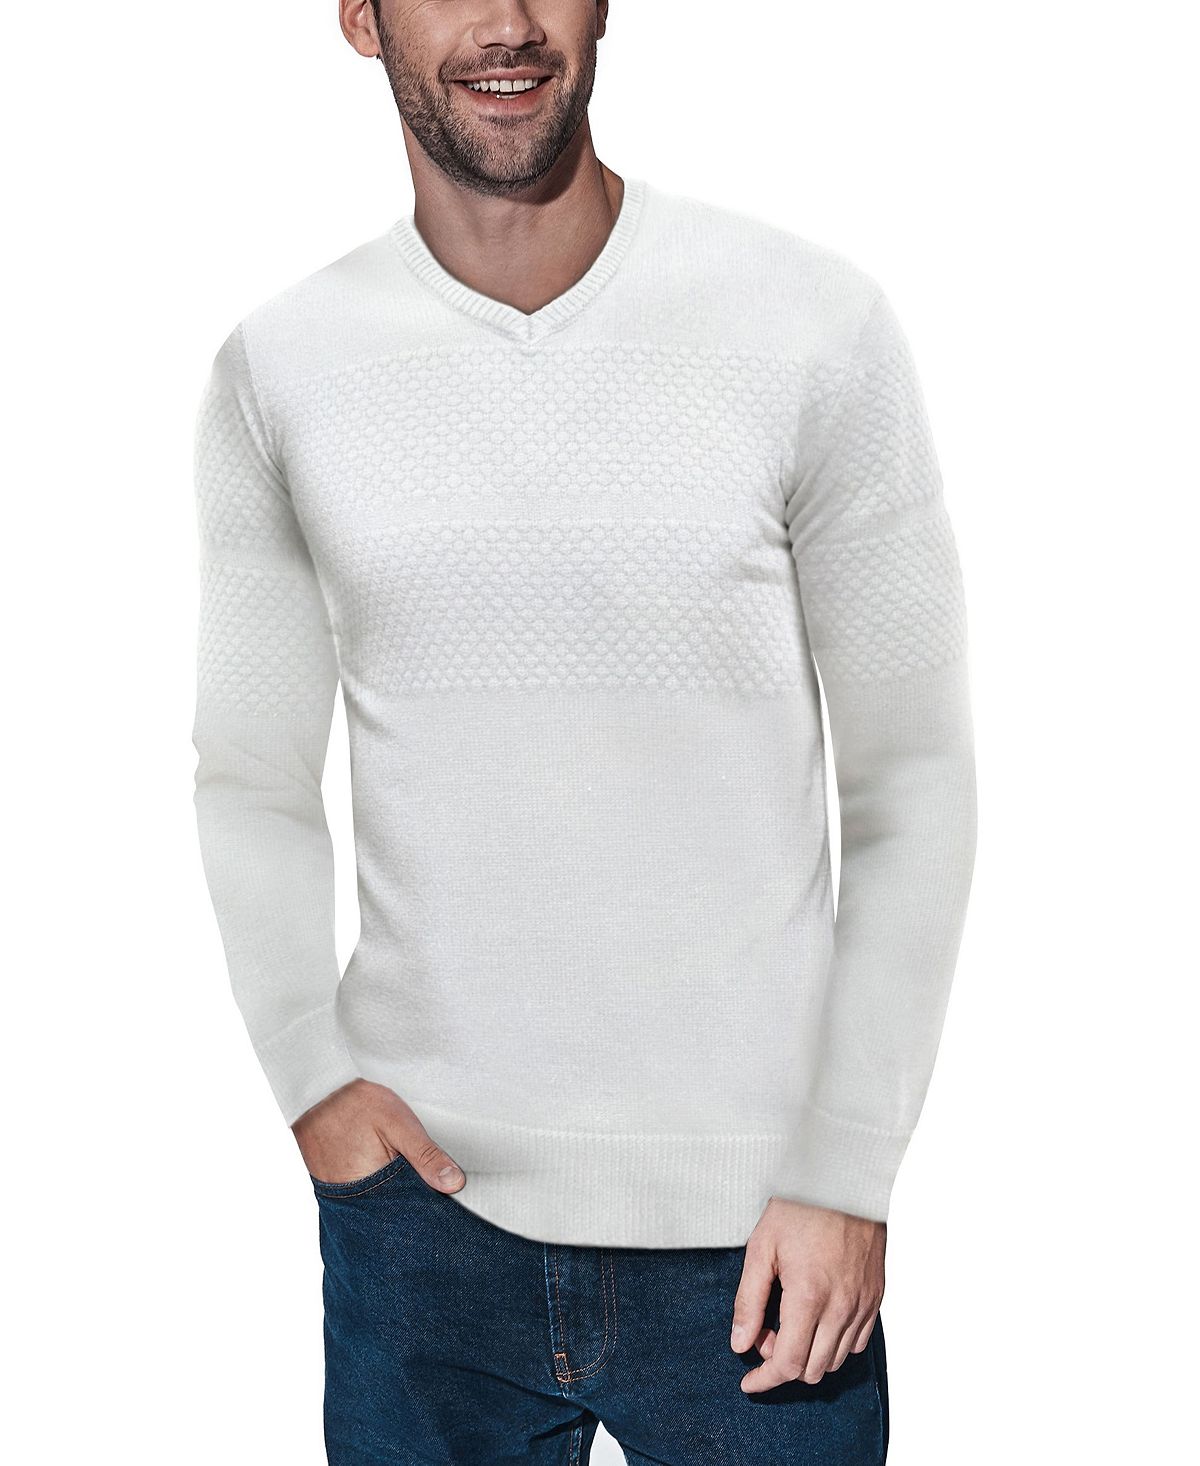 Мужской свитер сотовой вязки с v-образным вырезом X-Ray, мульти пуловер с v образным вырезом из льна